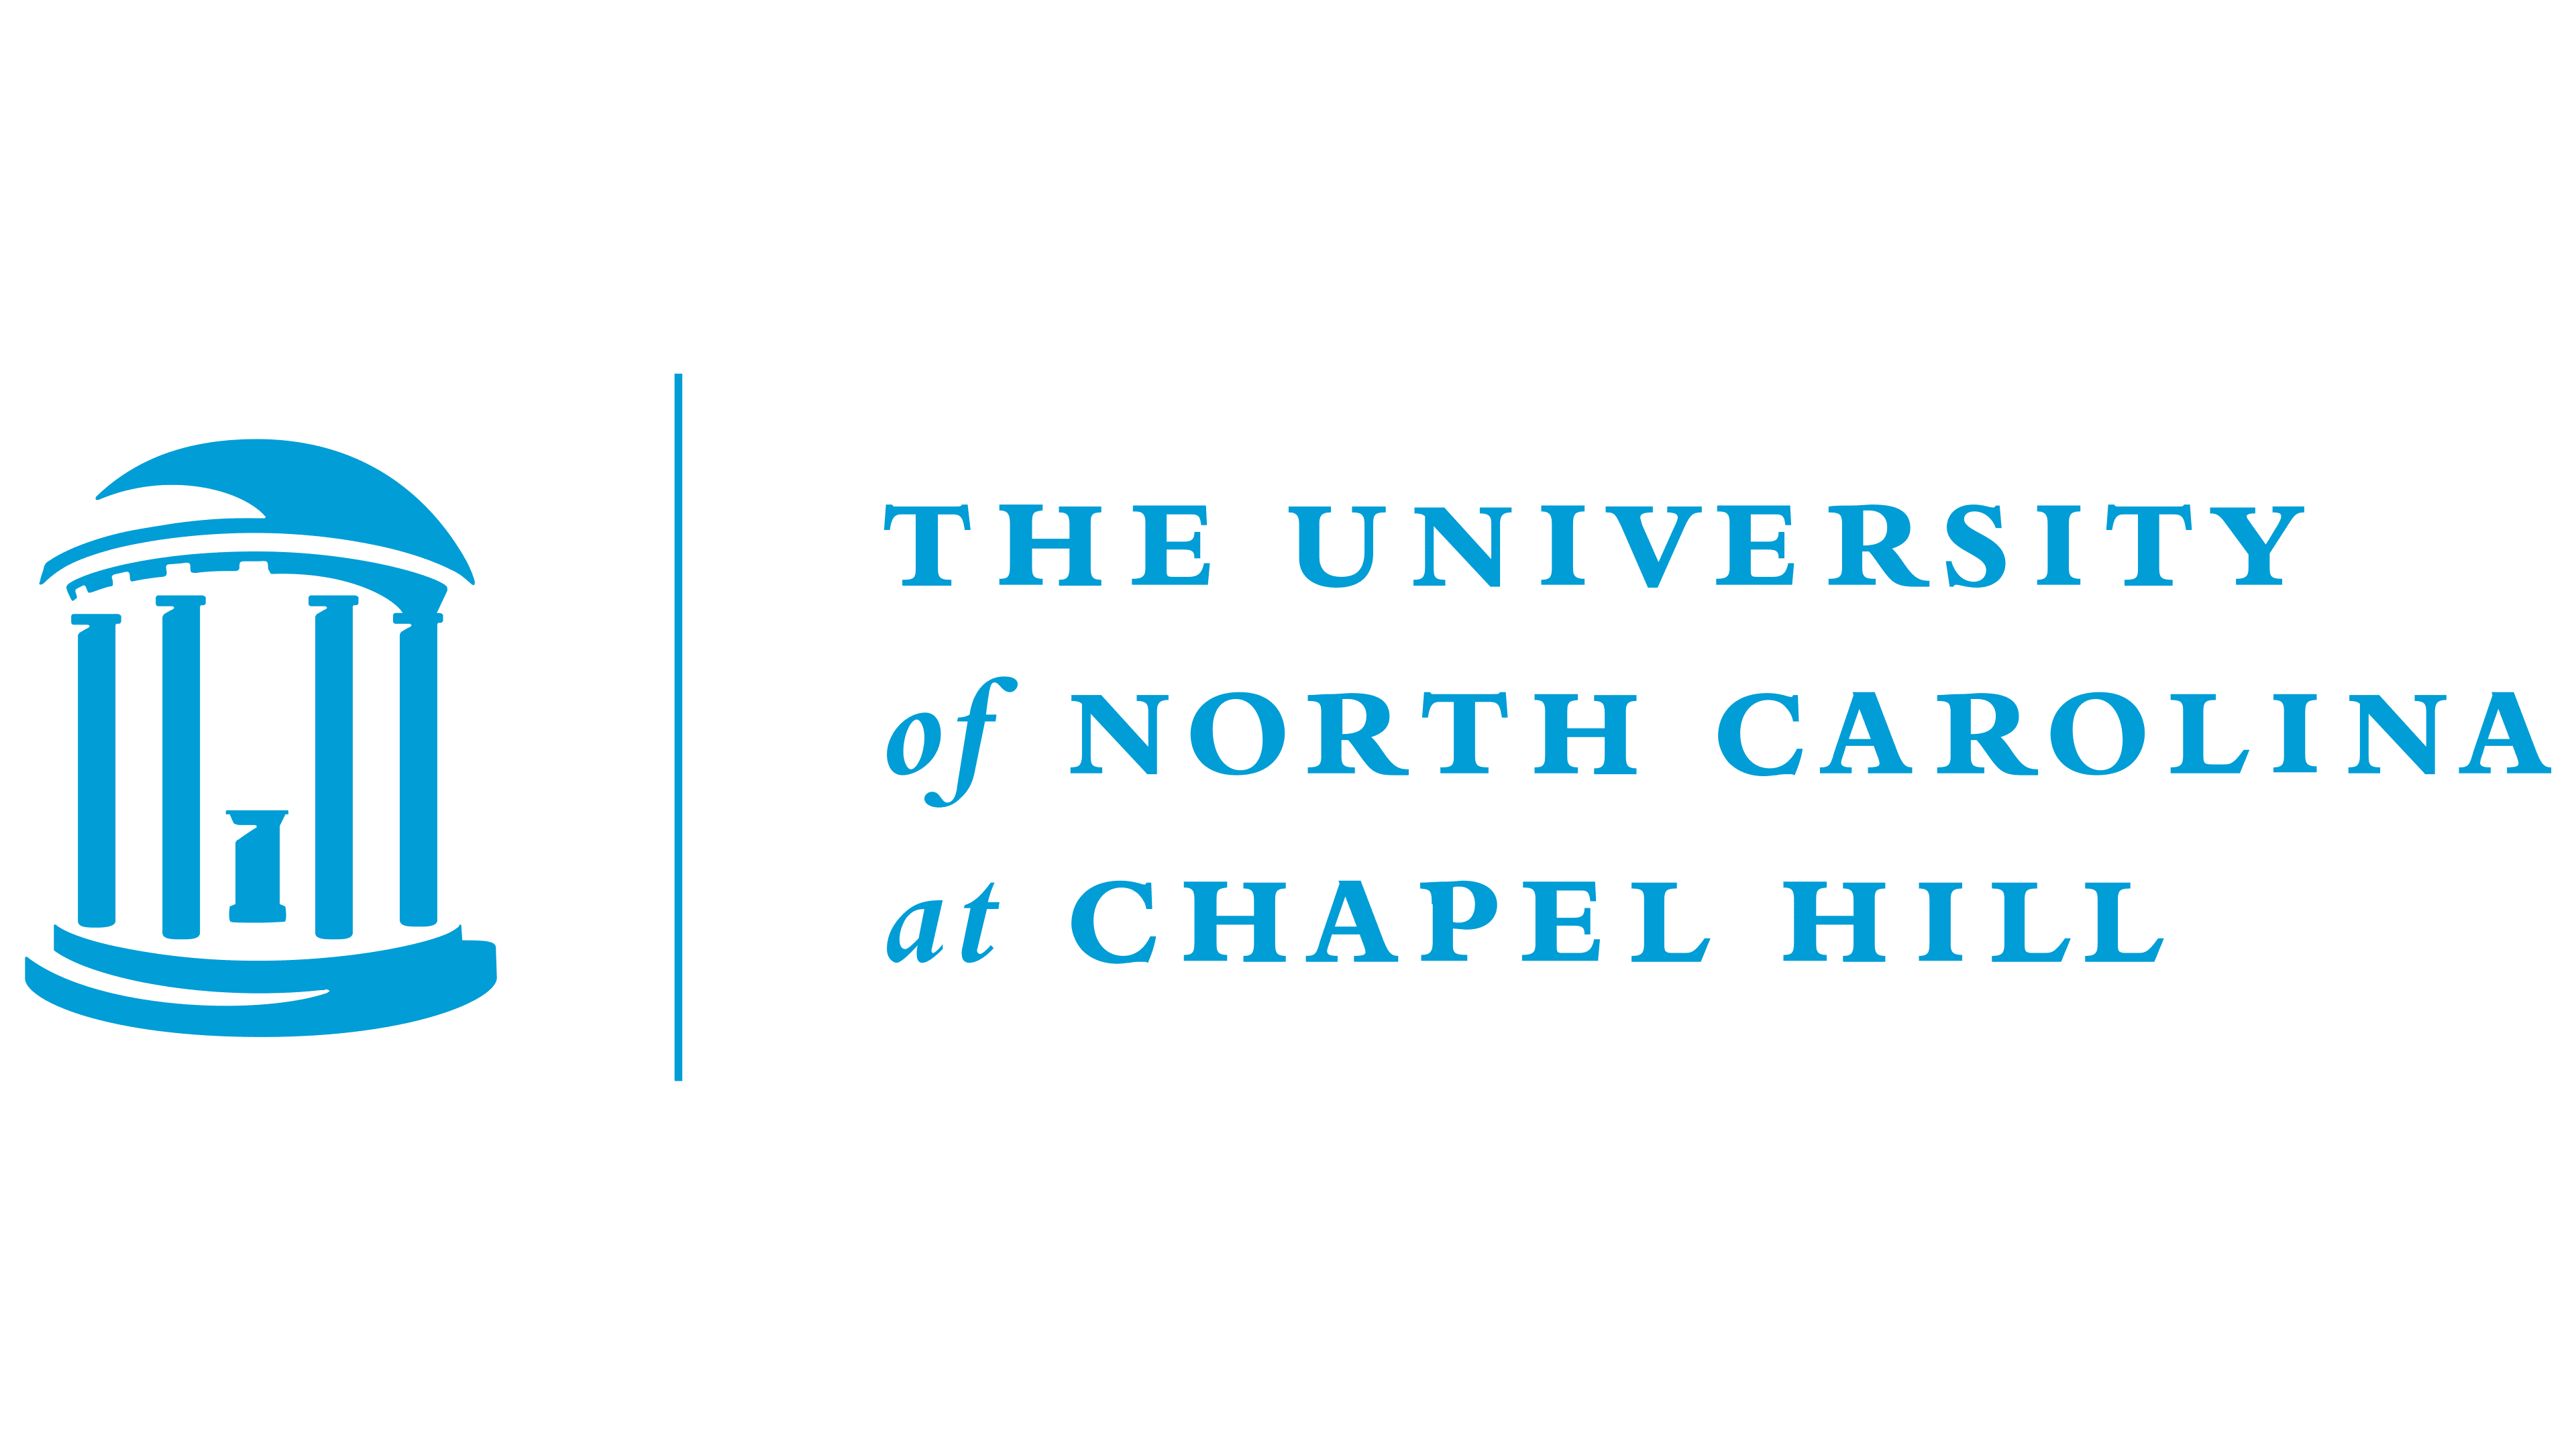 The university of north carolina at chapel hill